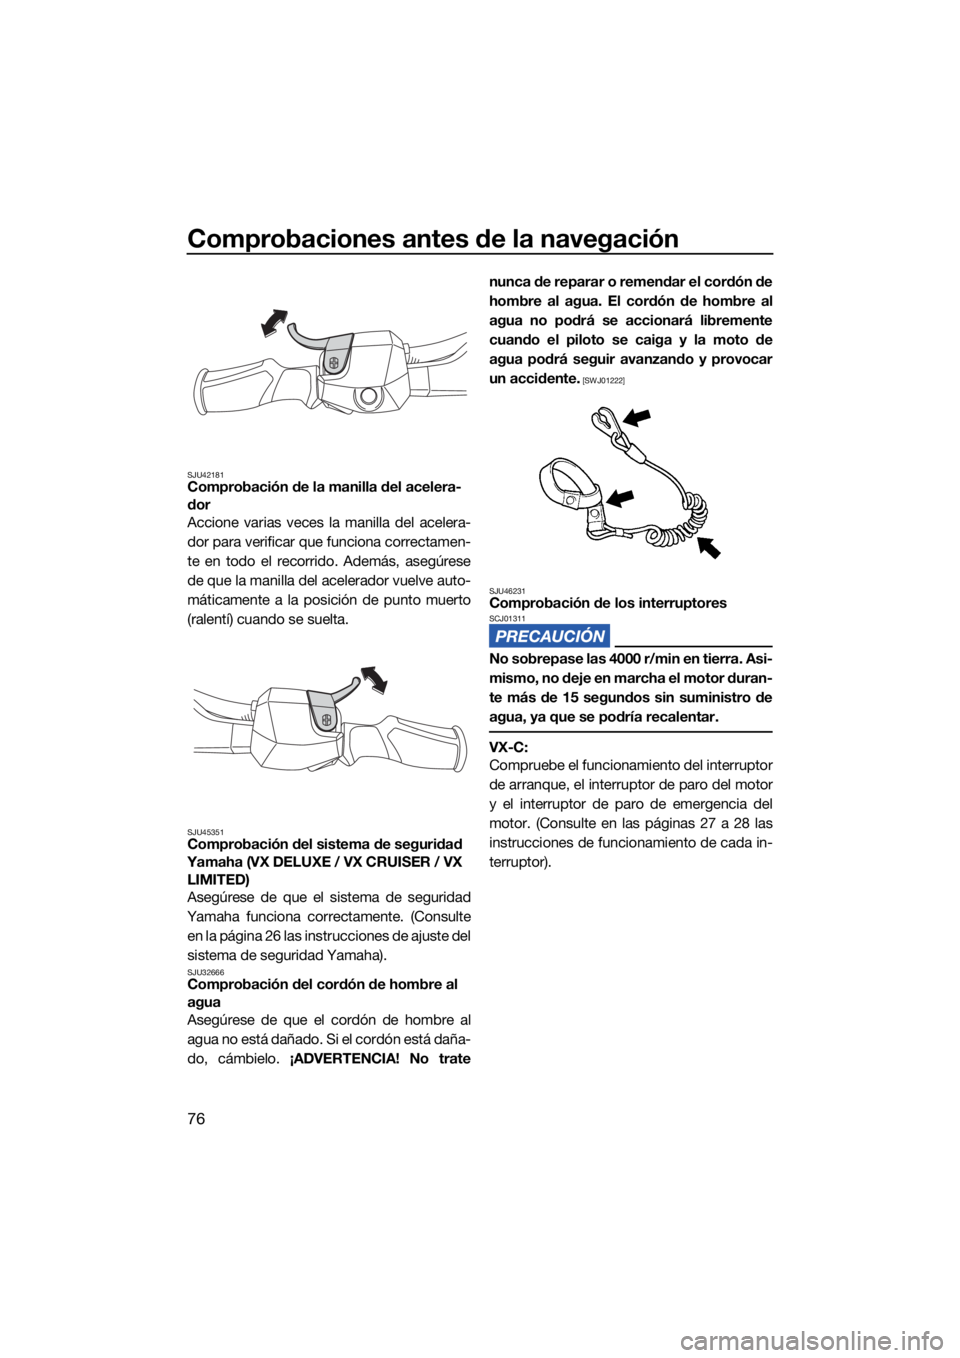 YAMAHA VX 2022  Manuale de Empleo (in Spanish) Comprobaciones antes de la navegación
76
SJU42181Comprobación de la manilla del acelera-
dor
Accione varias veces la manilla del acelera-
dor para verificar que funciona correctamen-
te en todo el r